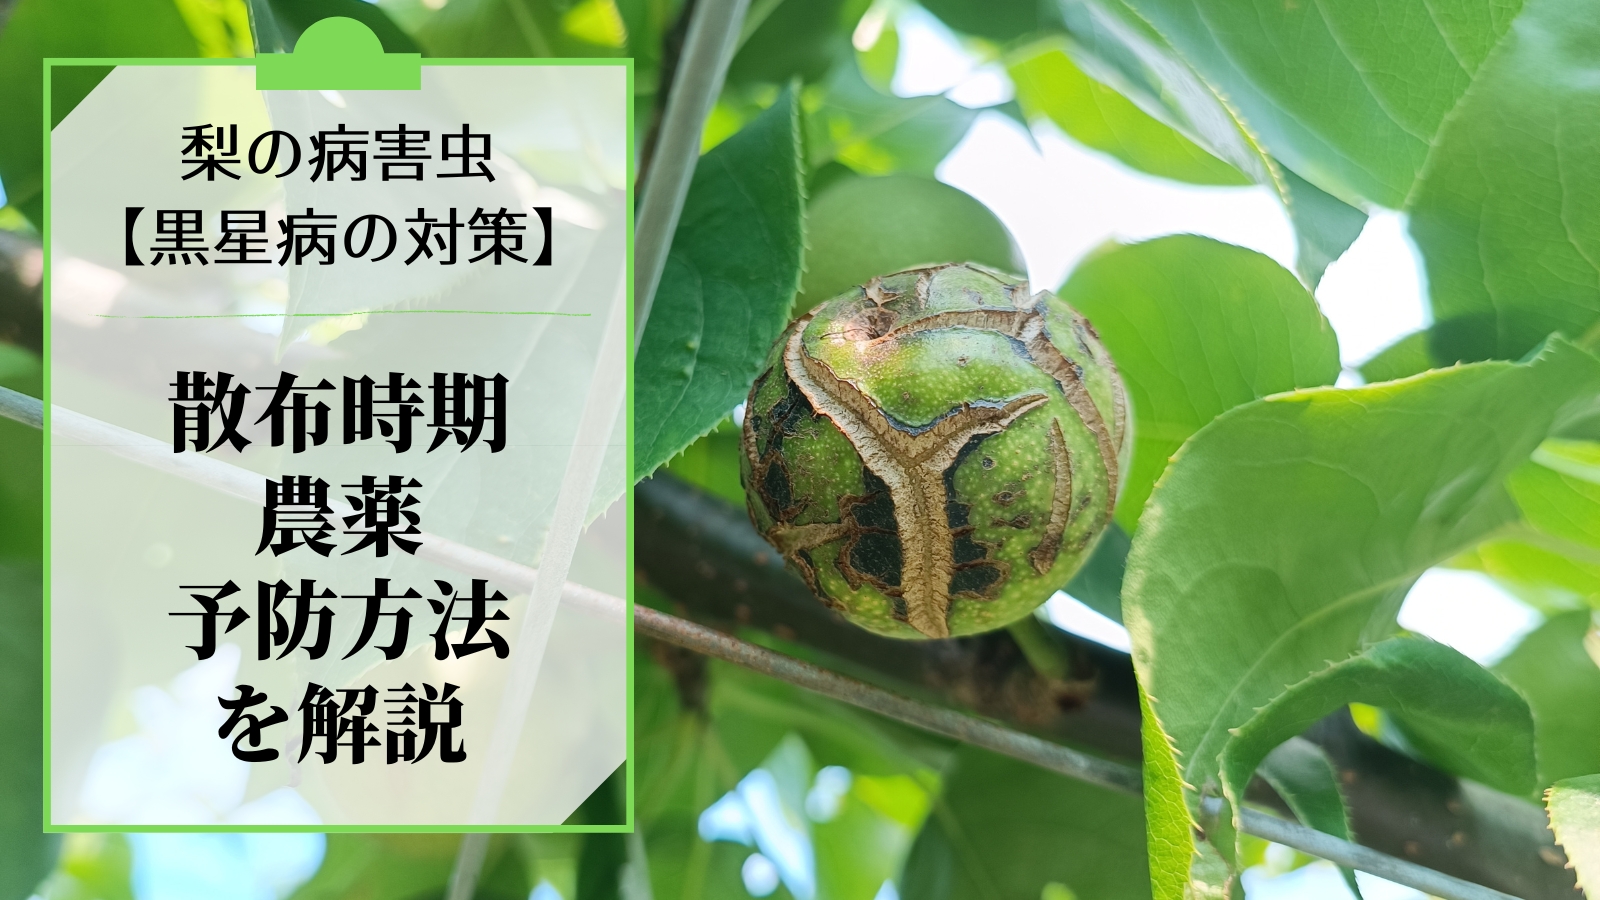 梨の黒星病の対策｜鱗片脱落期からの防除･農薬を解説 25